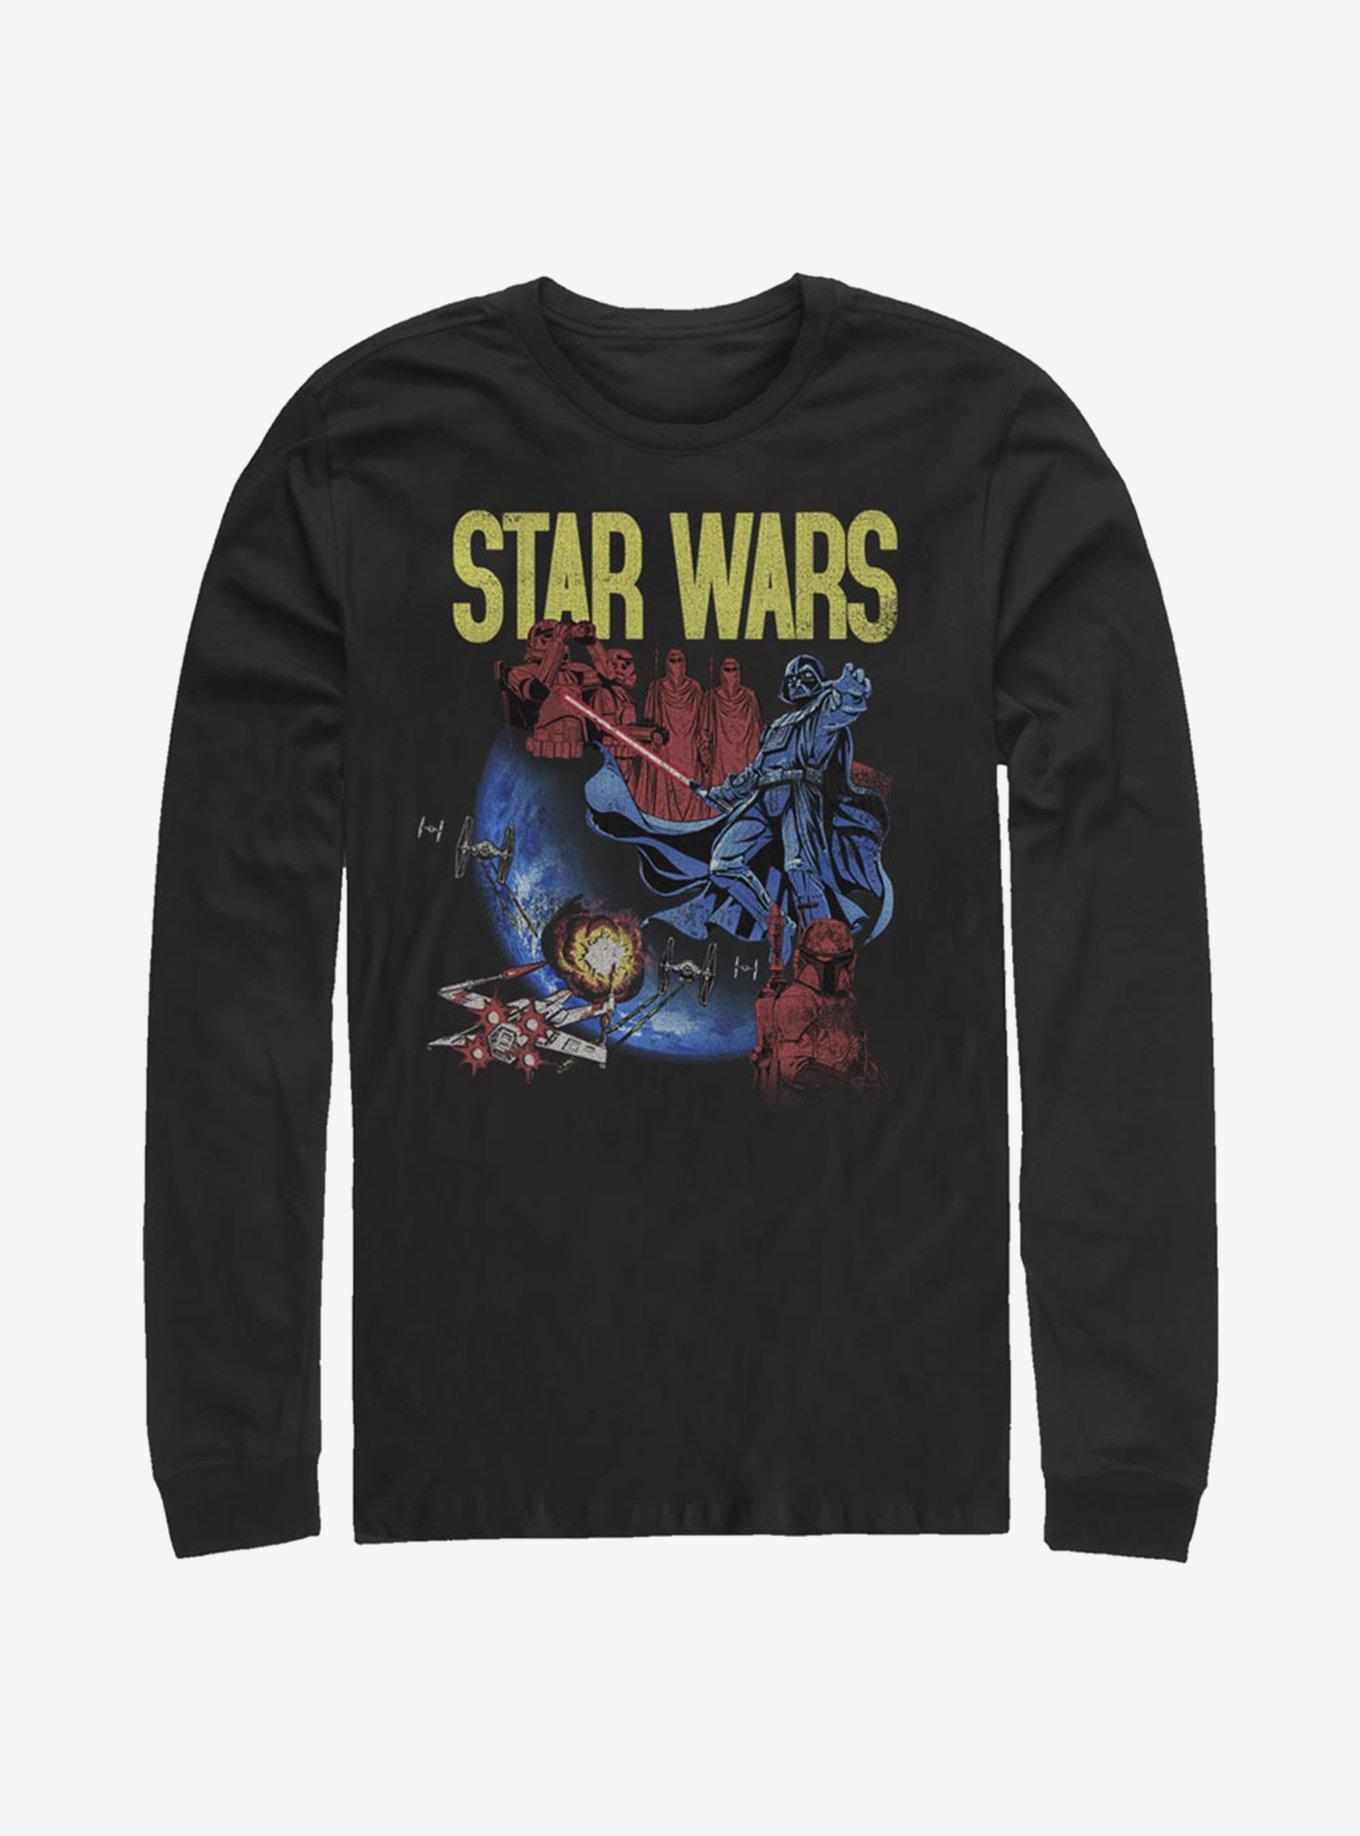 Star Wars Darth Vader Space Long-Sleeve T-Shirt, BLACK, hi-res